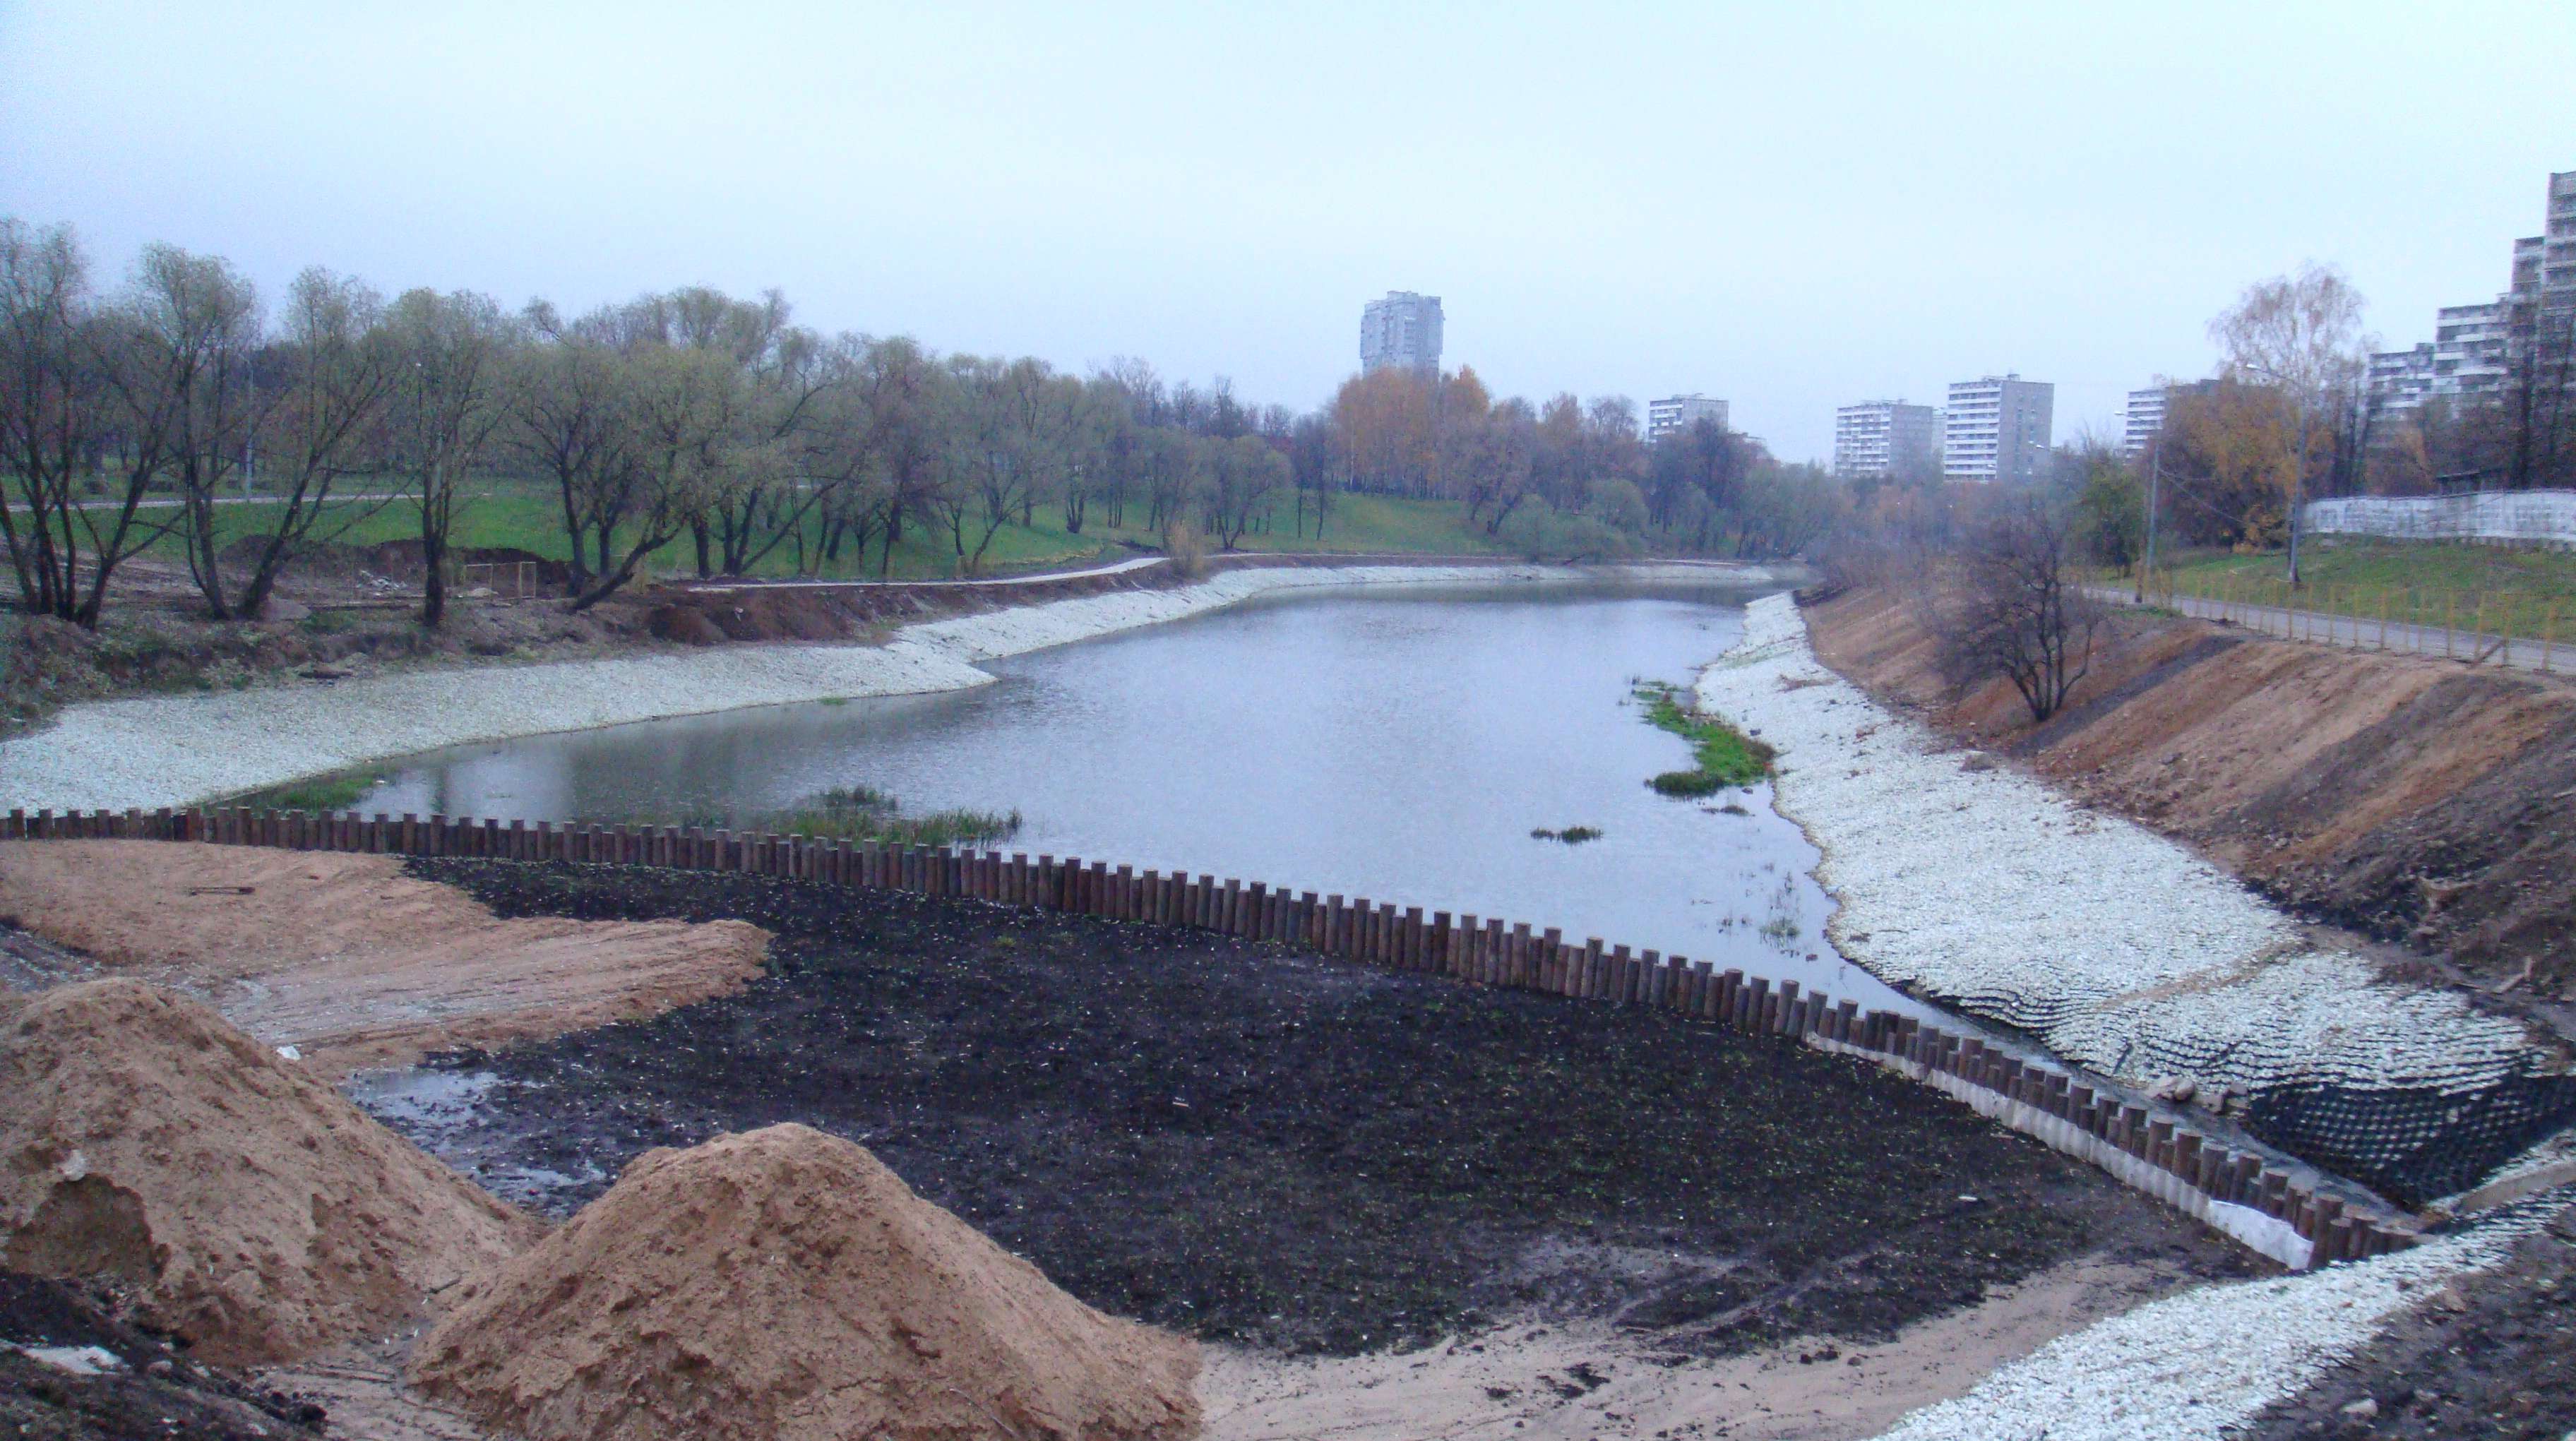 Черкизовский пруд — один из самых старых сохранившихся прудов Москвы (XIV в.). Фотография реконструкции пруда в 2010 г.